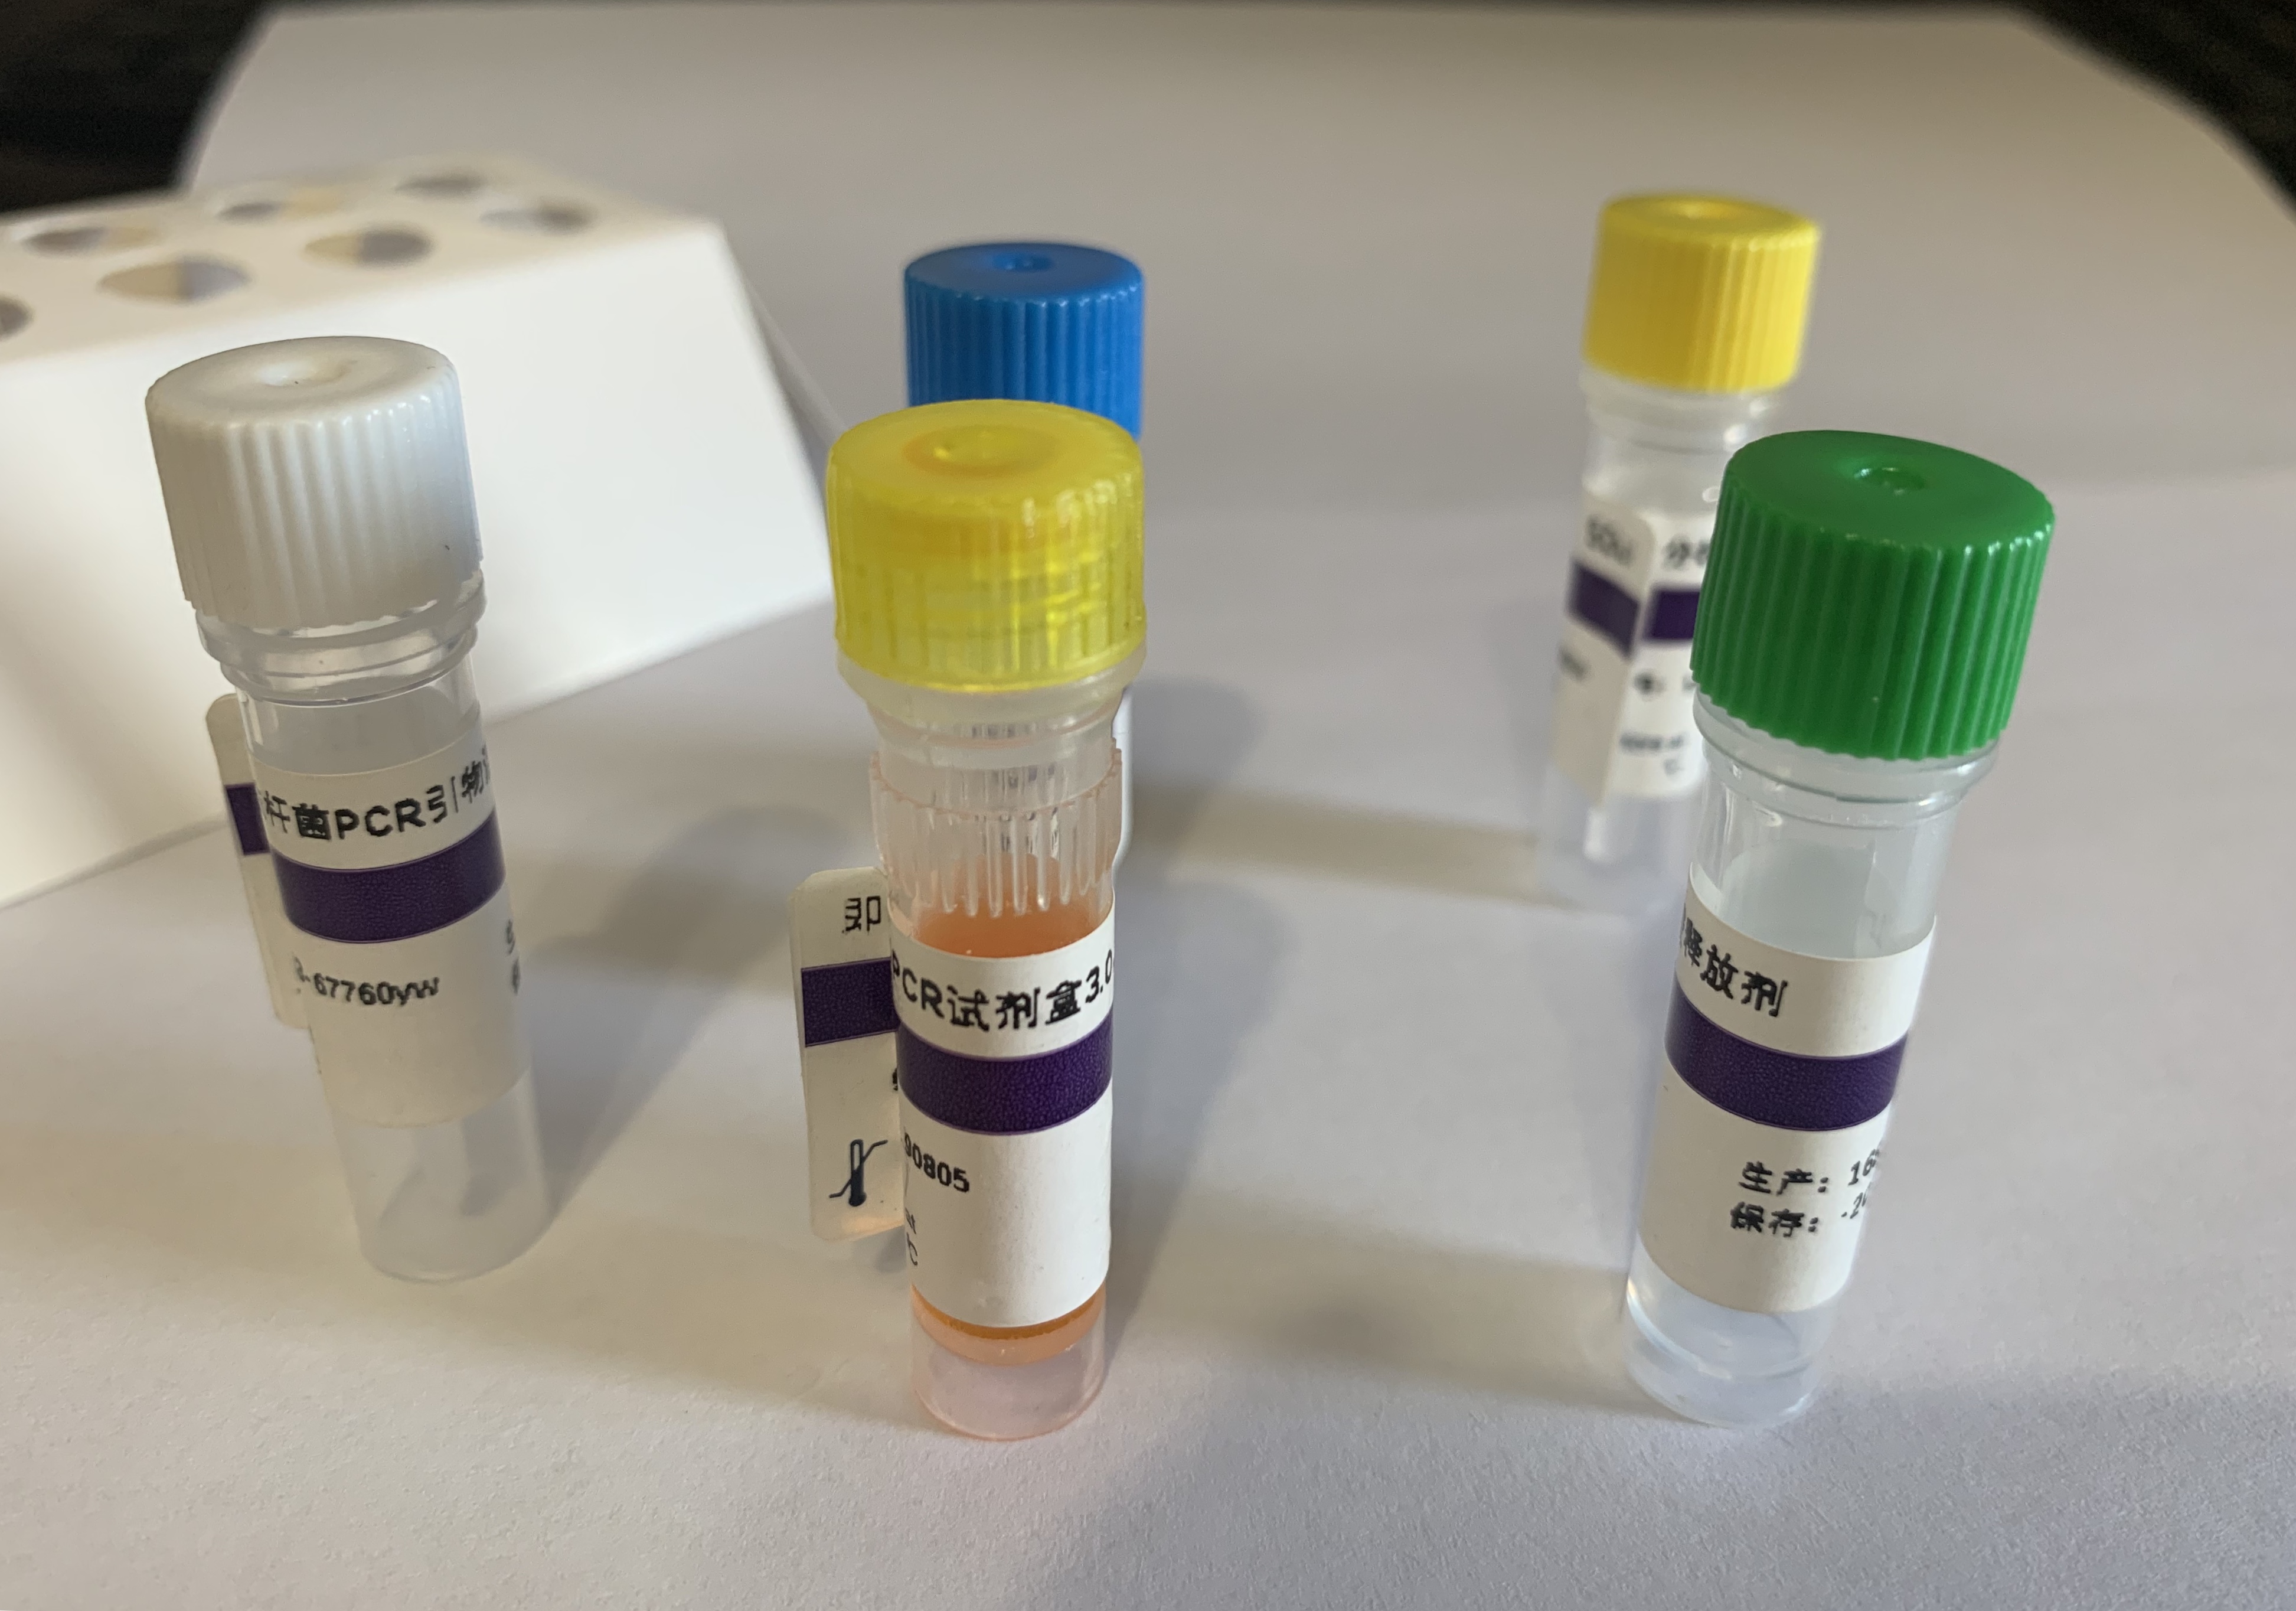 传染性造血器官坏死病病毒探针法荧光定量RT-PCR试剂盒